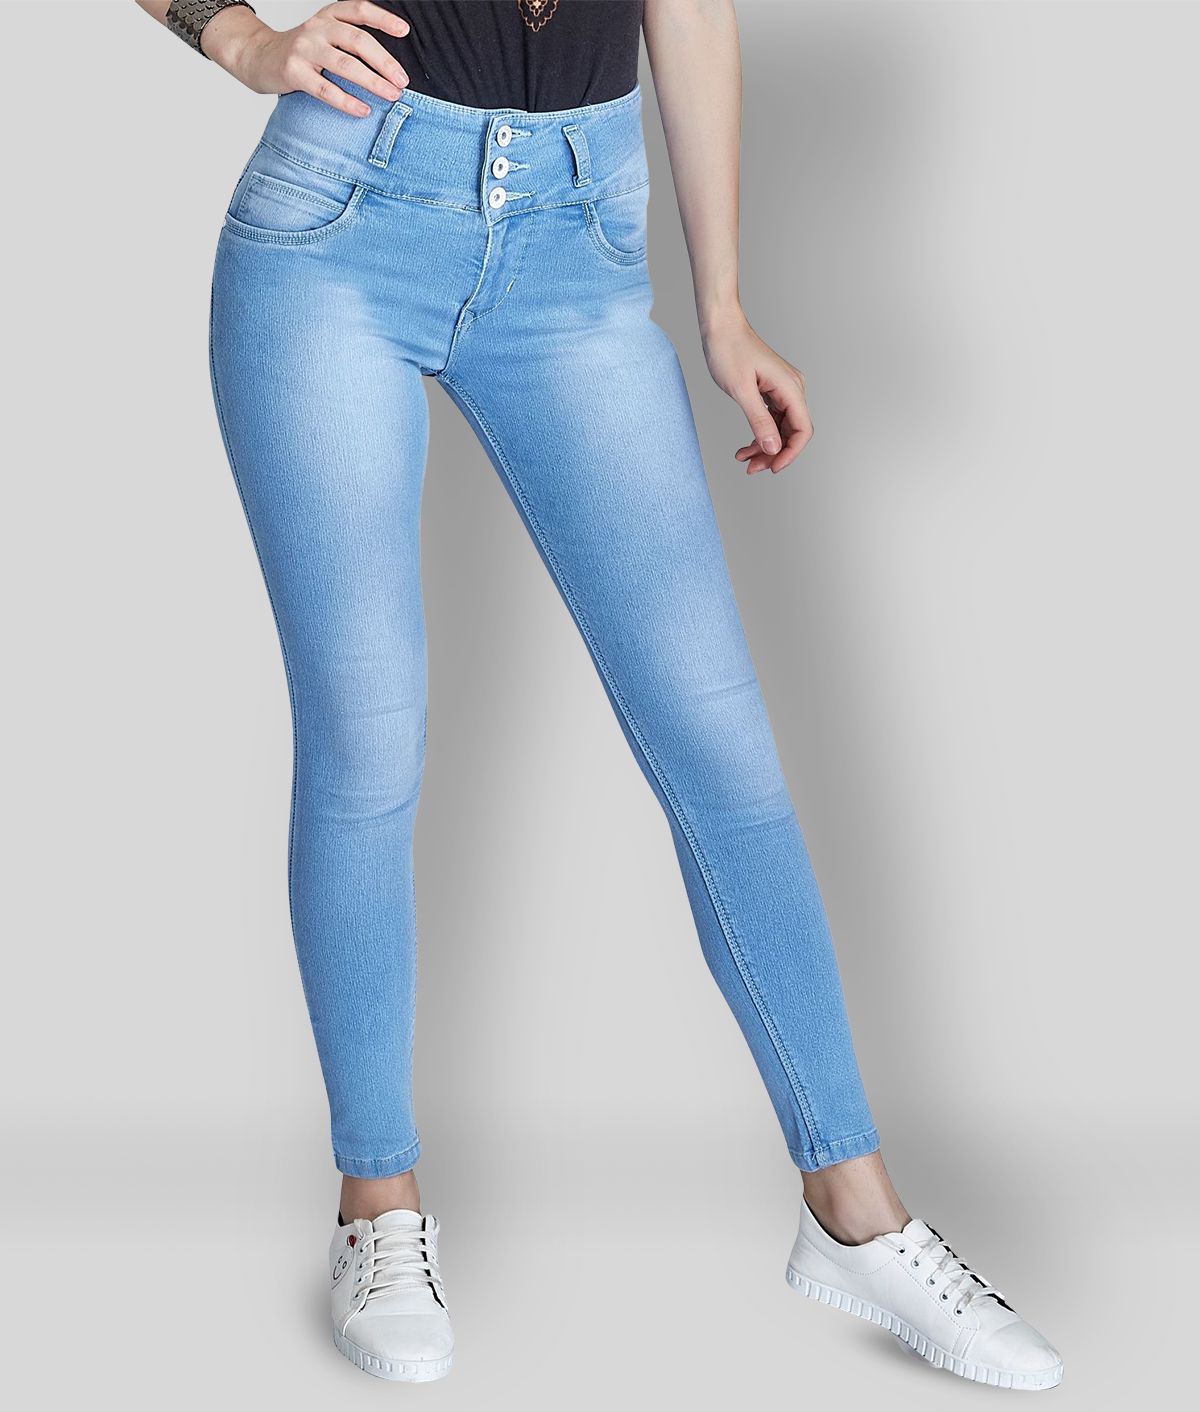 Rea-lize - Light Blue Cotton Blend Women's Jeans ( Pack of 1 )